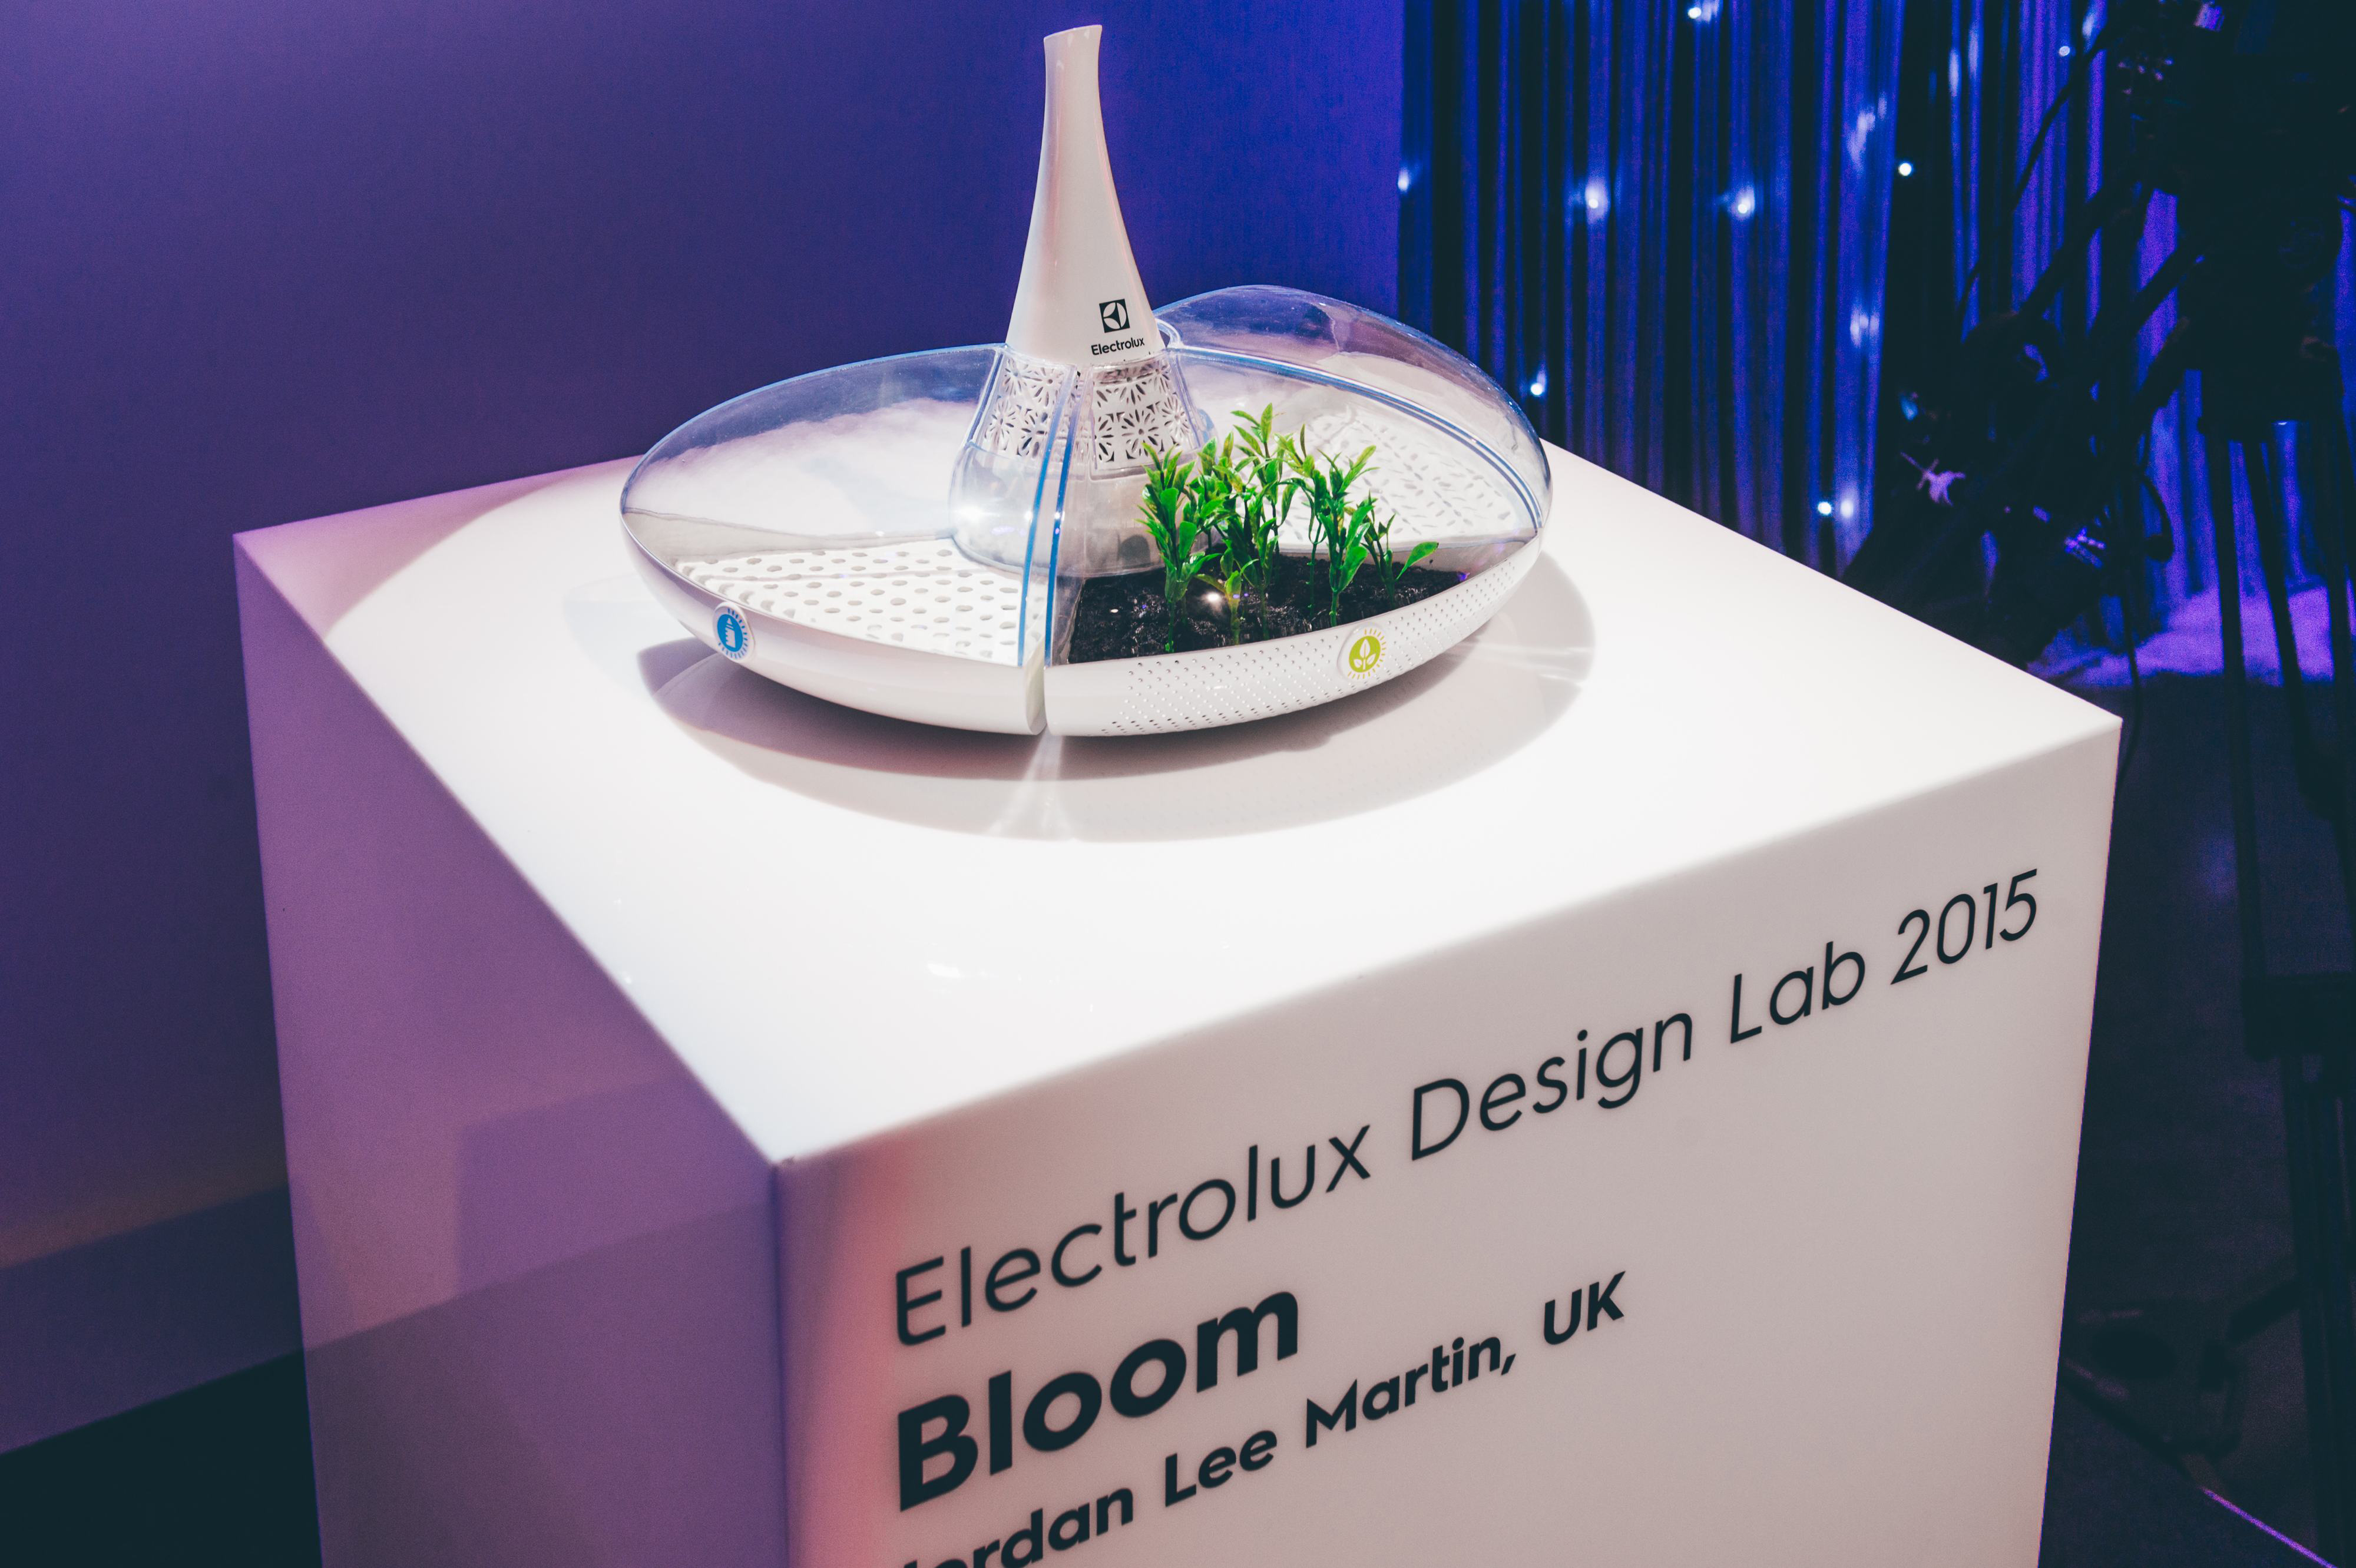 Das Konzept „Bloom“ siegte beim Design Lap 2015 von Electrolux.